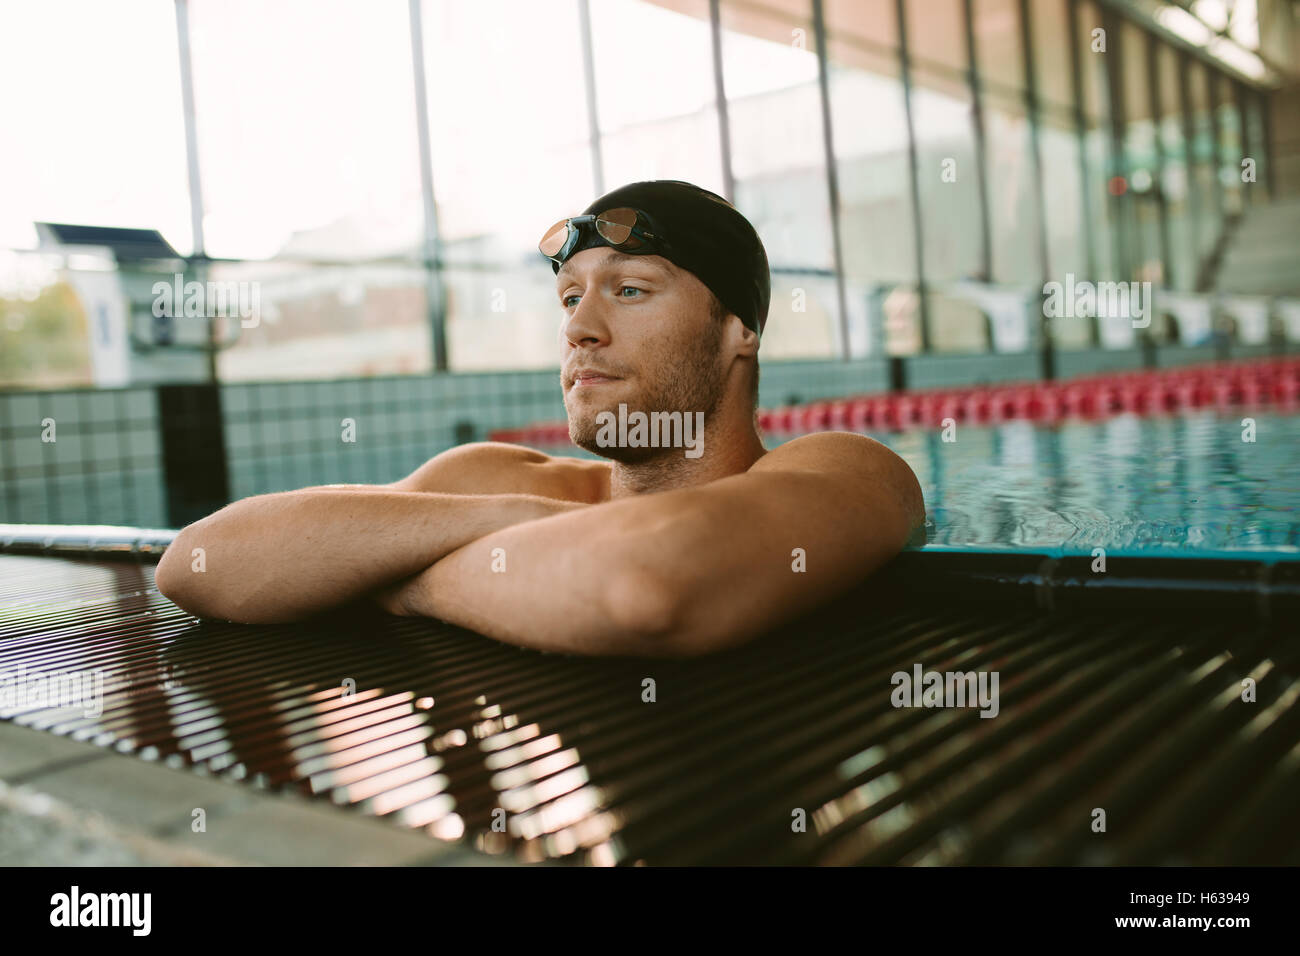 Foto de joven en el borde de la piscina. Pro nadador masculino descansando después de nadar. Foto de stock